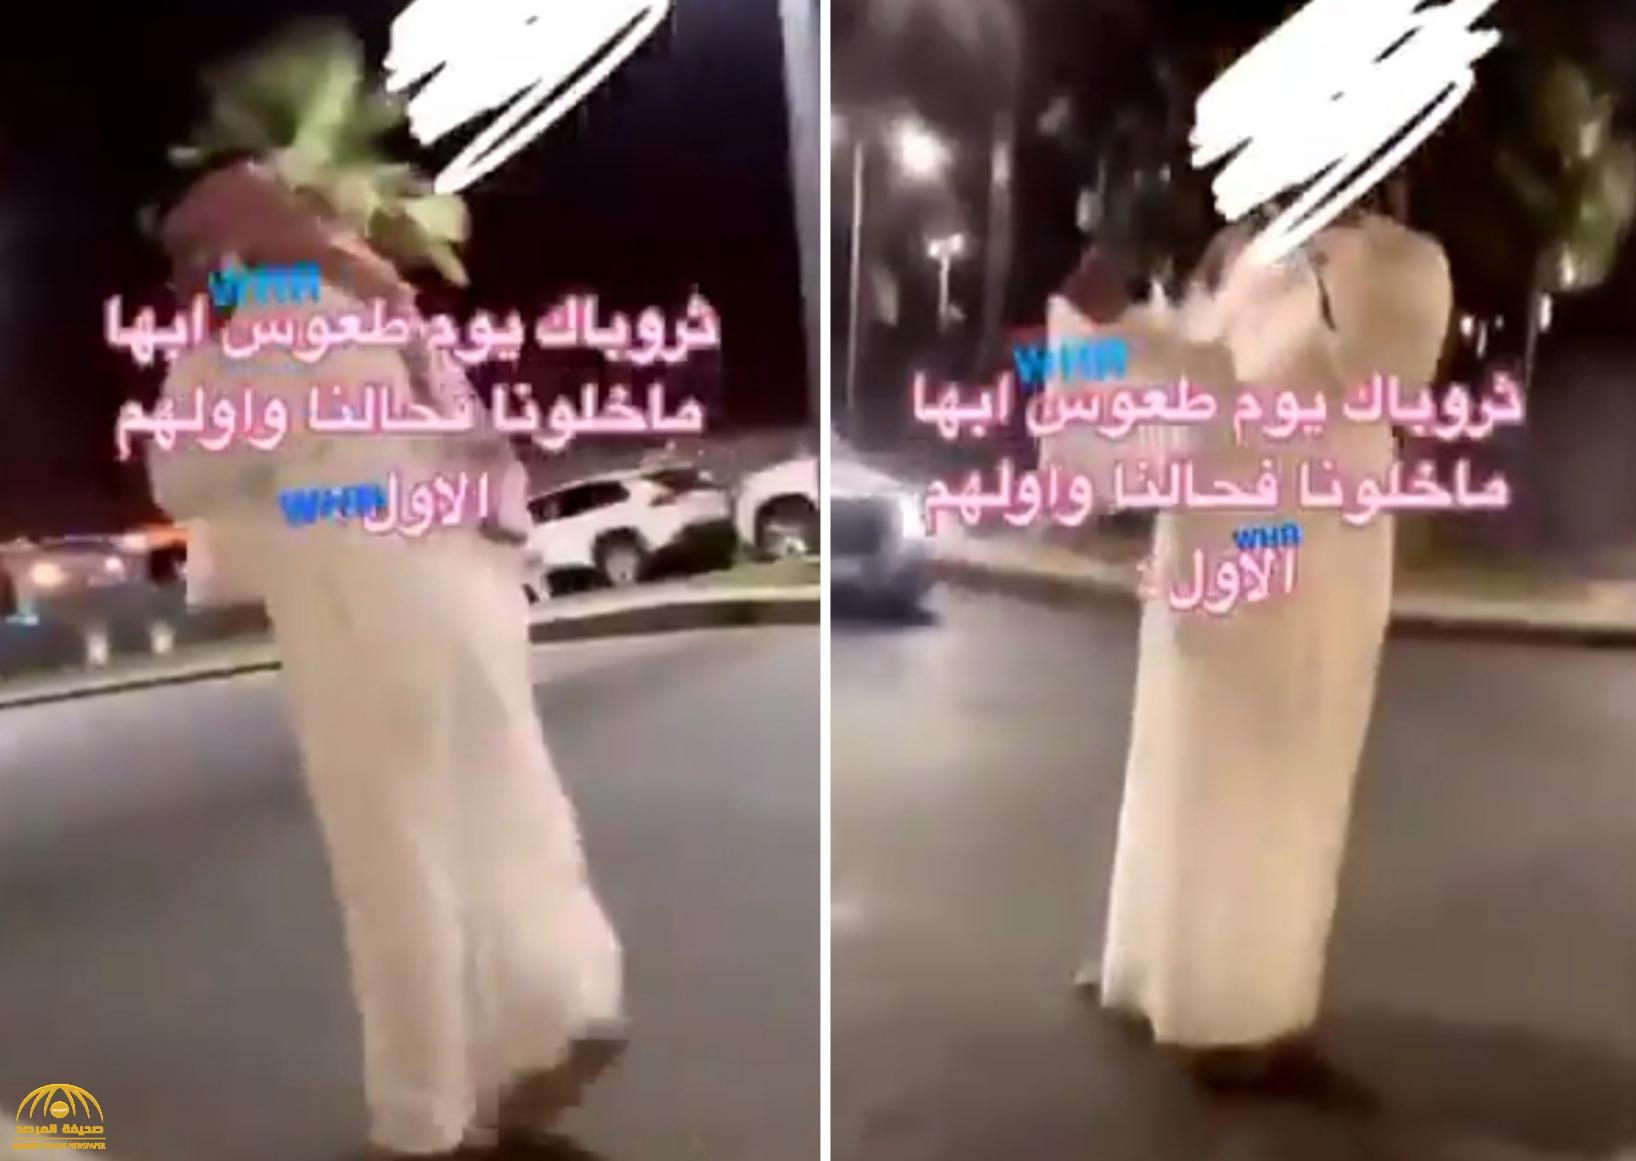 بالفيديو: شاب يحاول إعطاء رقمه لفتاة في شارع بأبها.. شاهد ردة فعلها!